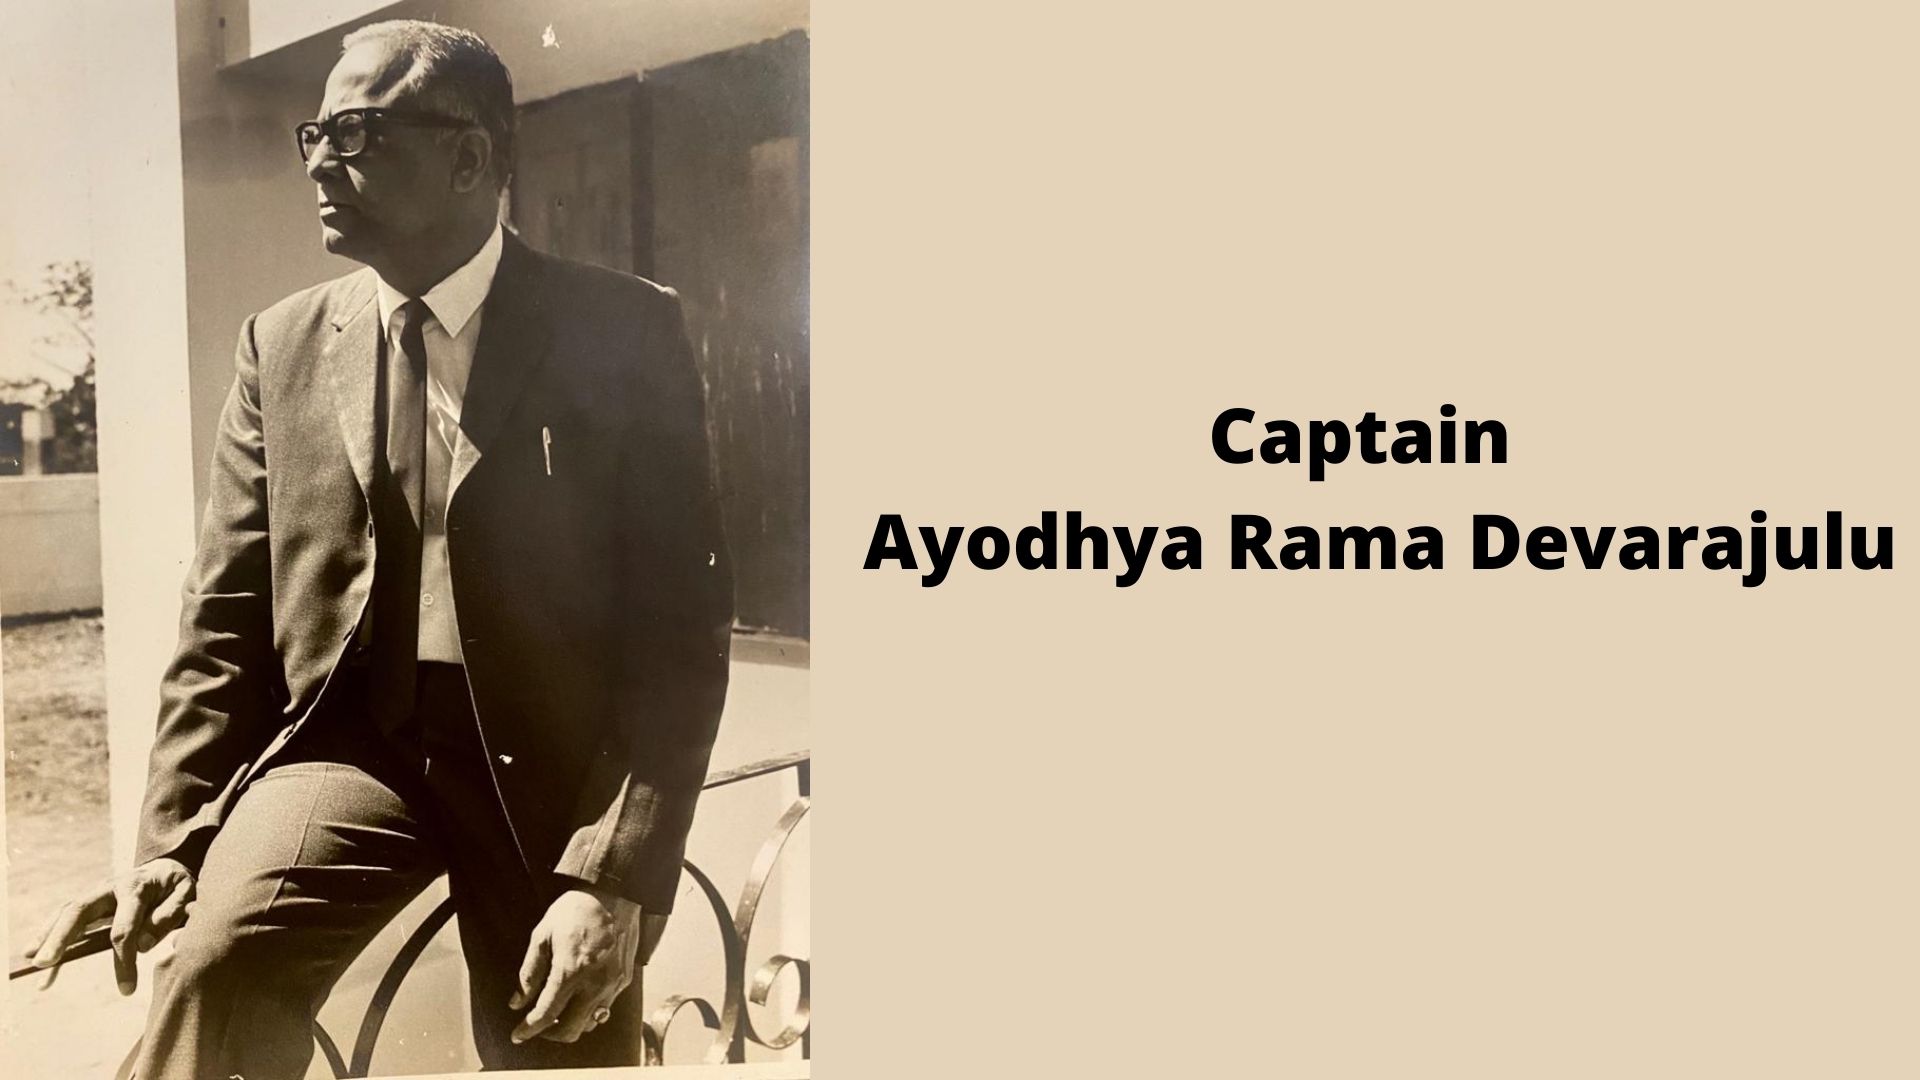 Captain Ayodhya Rama Devarajulu - The Aviator